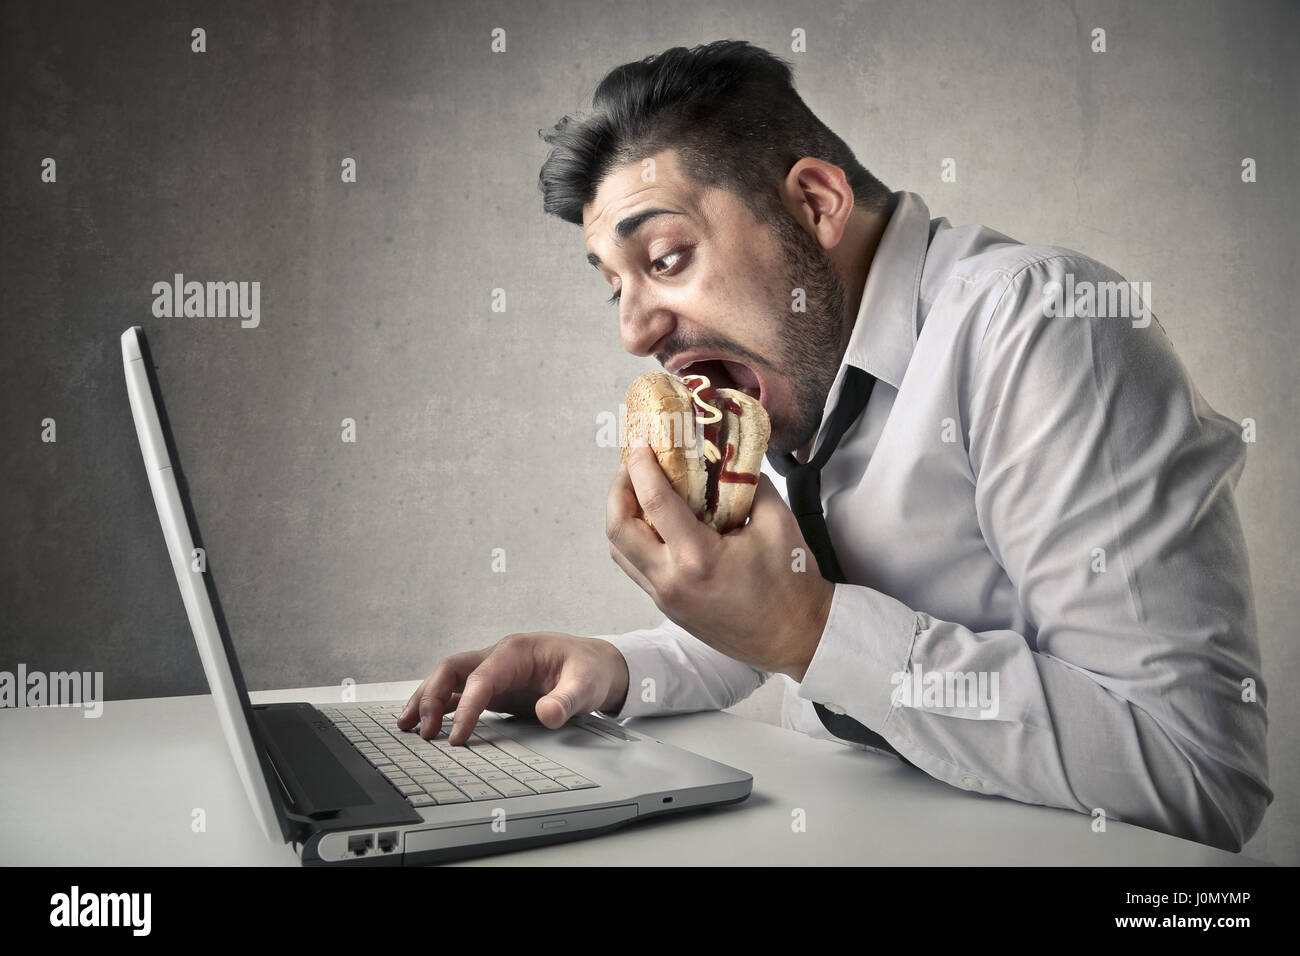 Man eating hamburger while looking at laptop Stock Photo